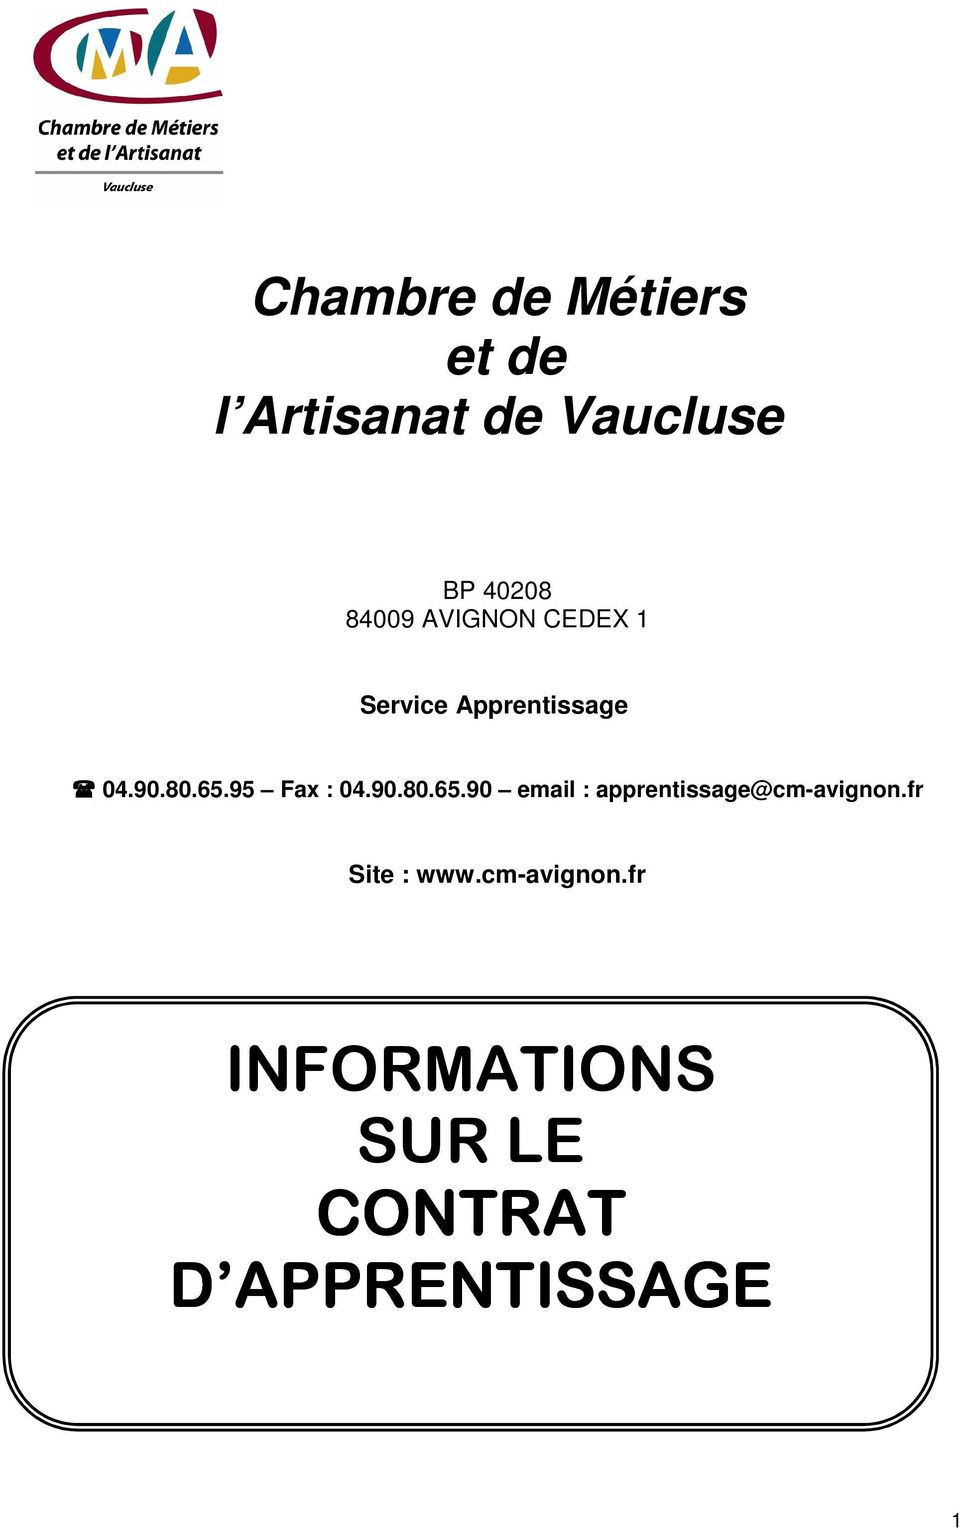 95 Fax : 04.90.80.65.90 email : apprentissage@cm-avignon.